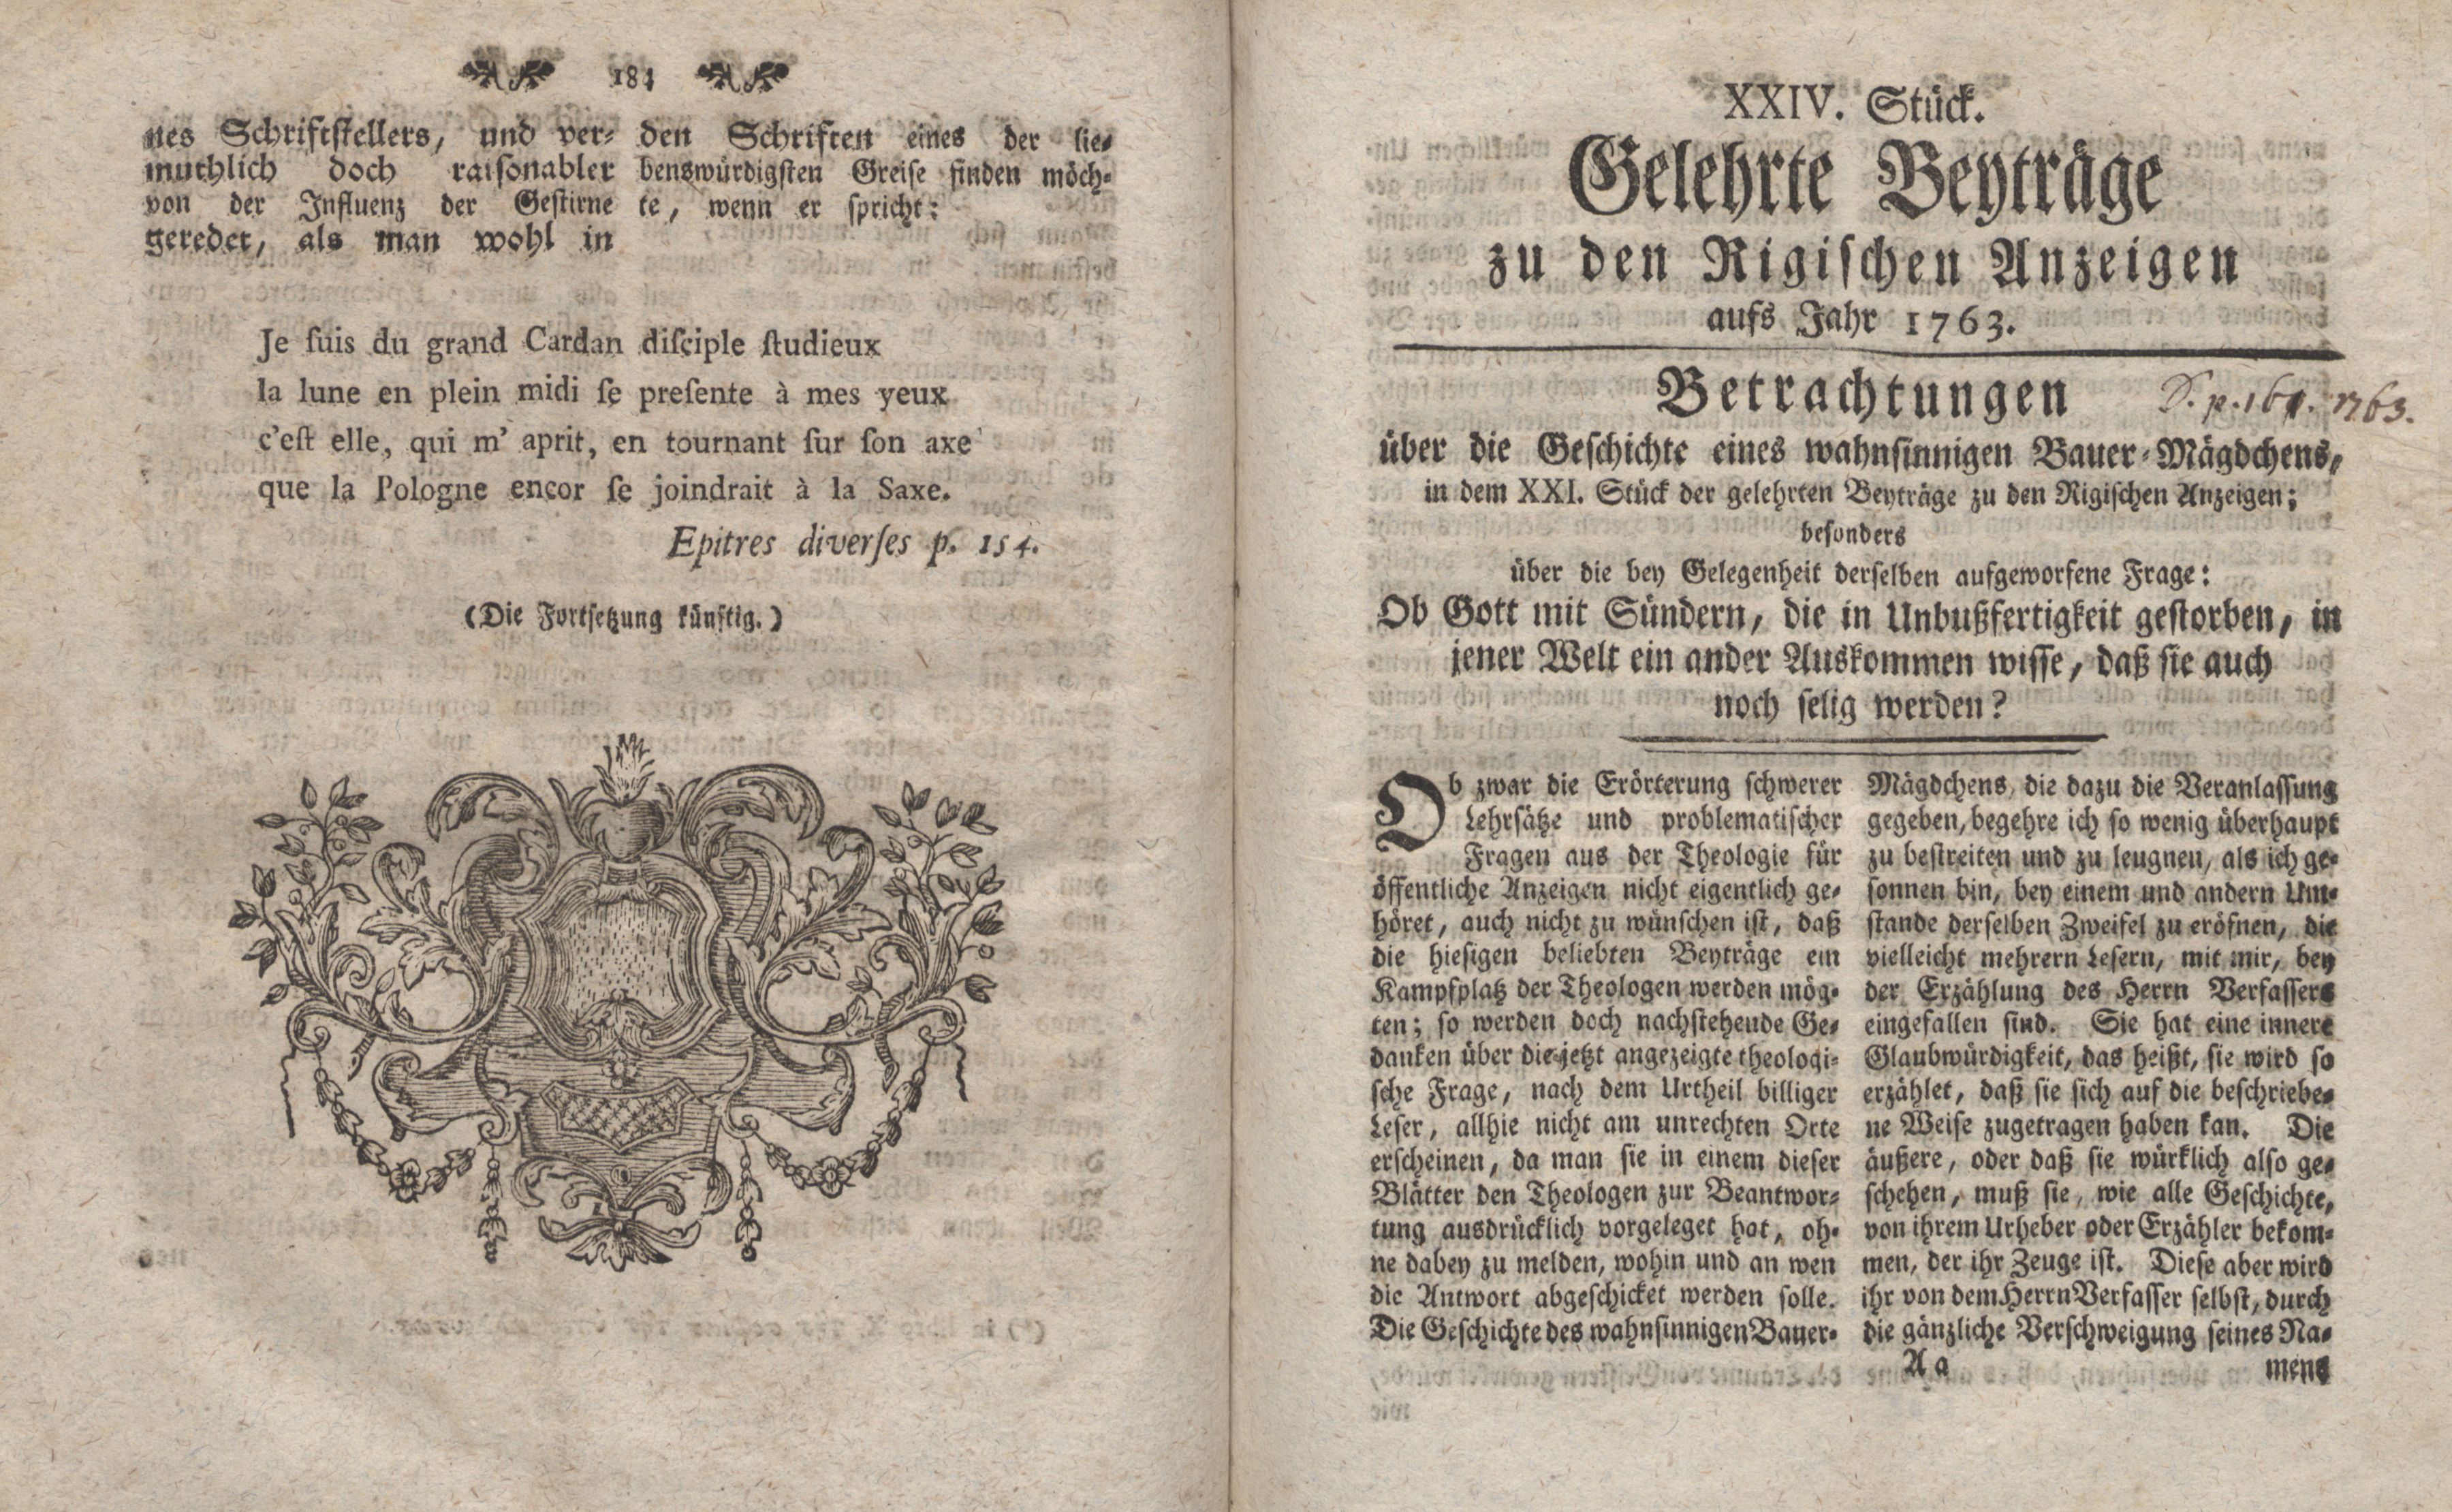 Betrachtungen über die Geschichte eines wahnsinnigen Bauer-Mägdchens (1763) | 1. (184-185) Main body of text